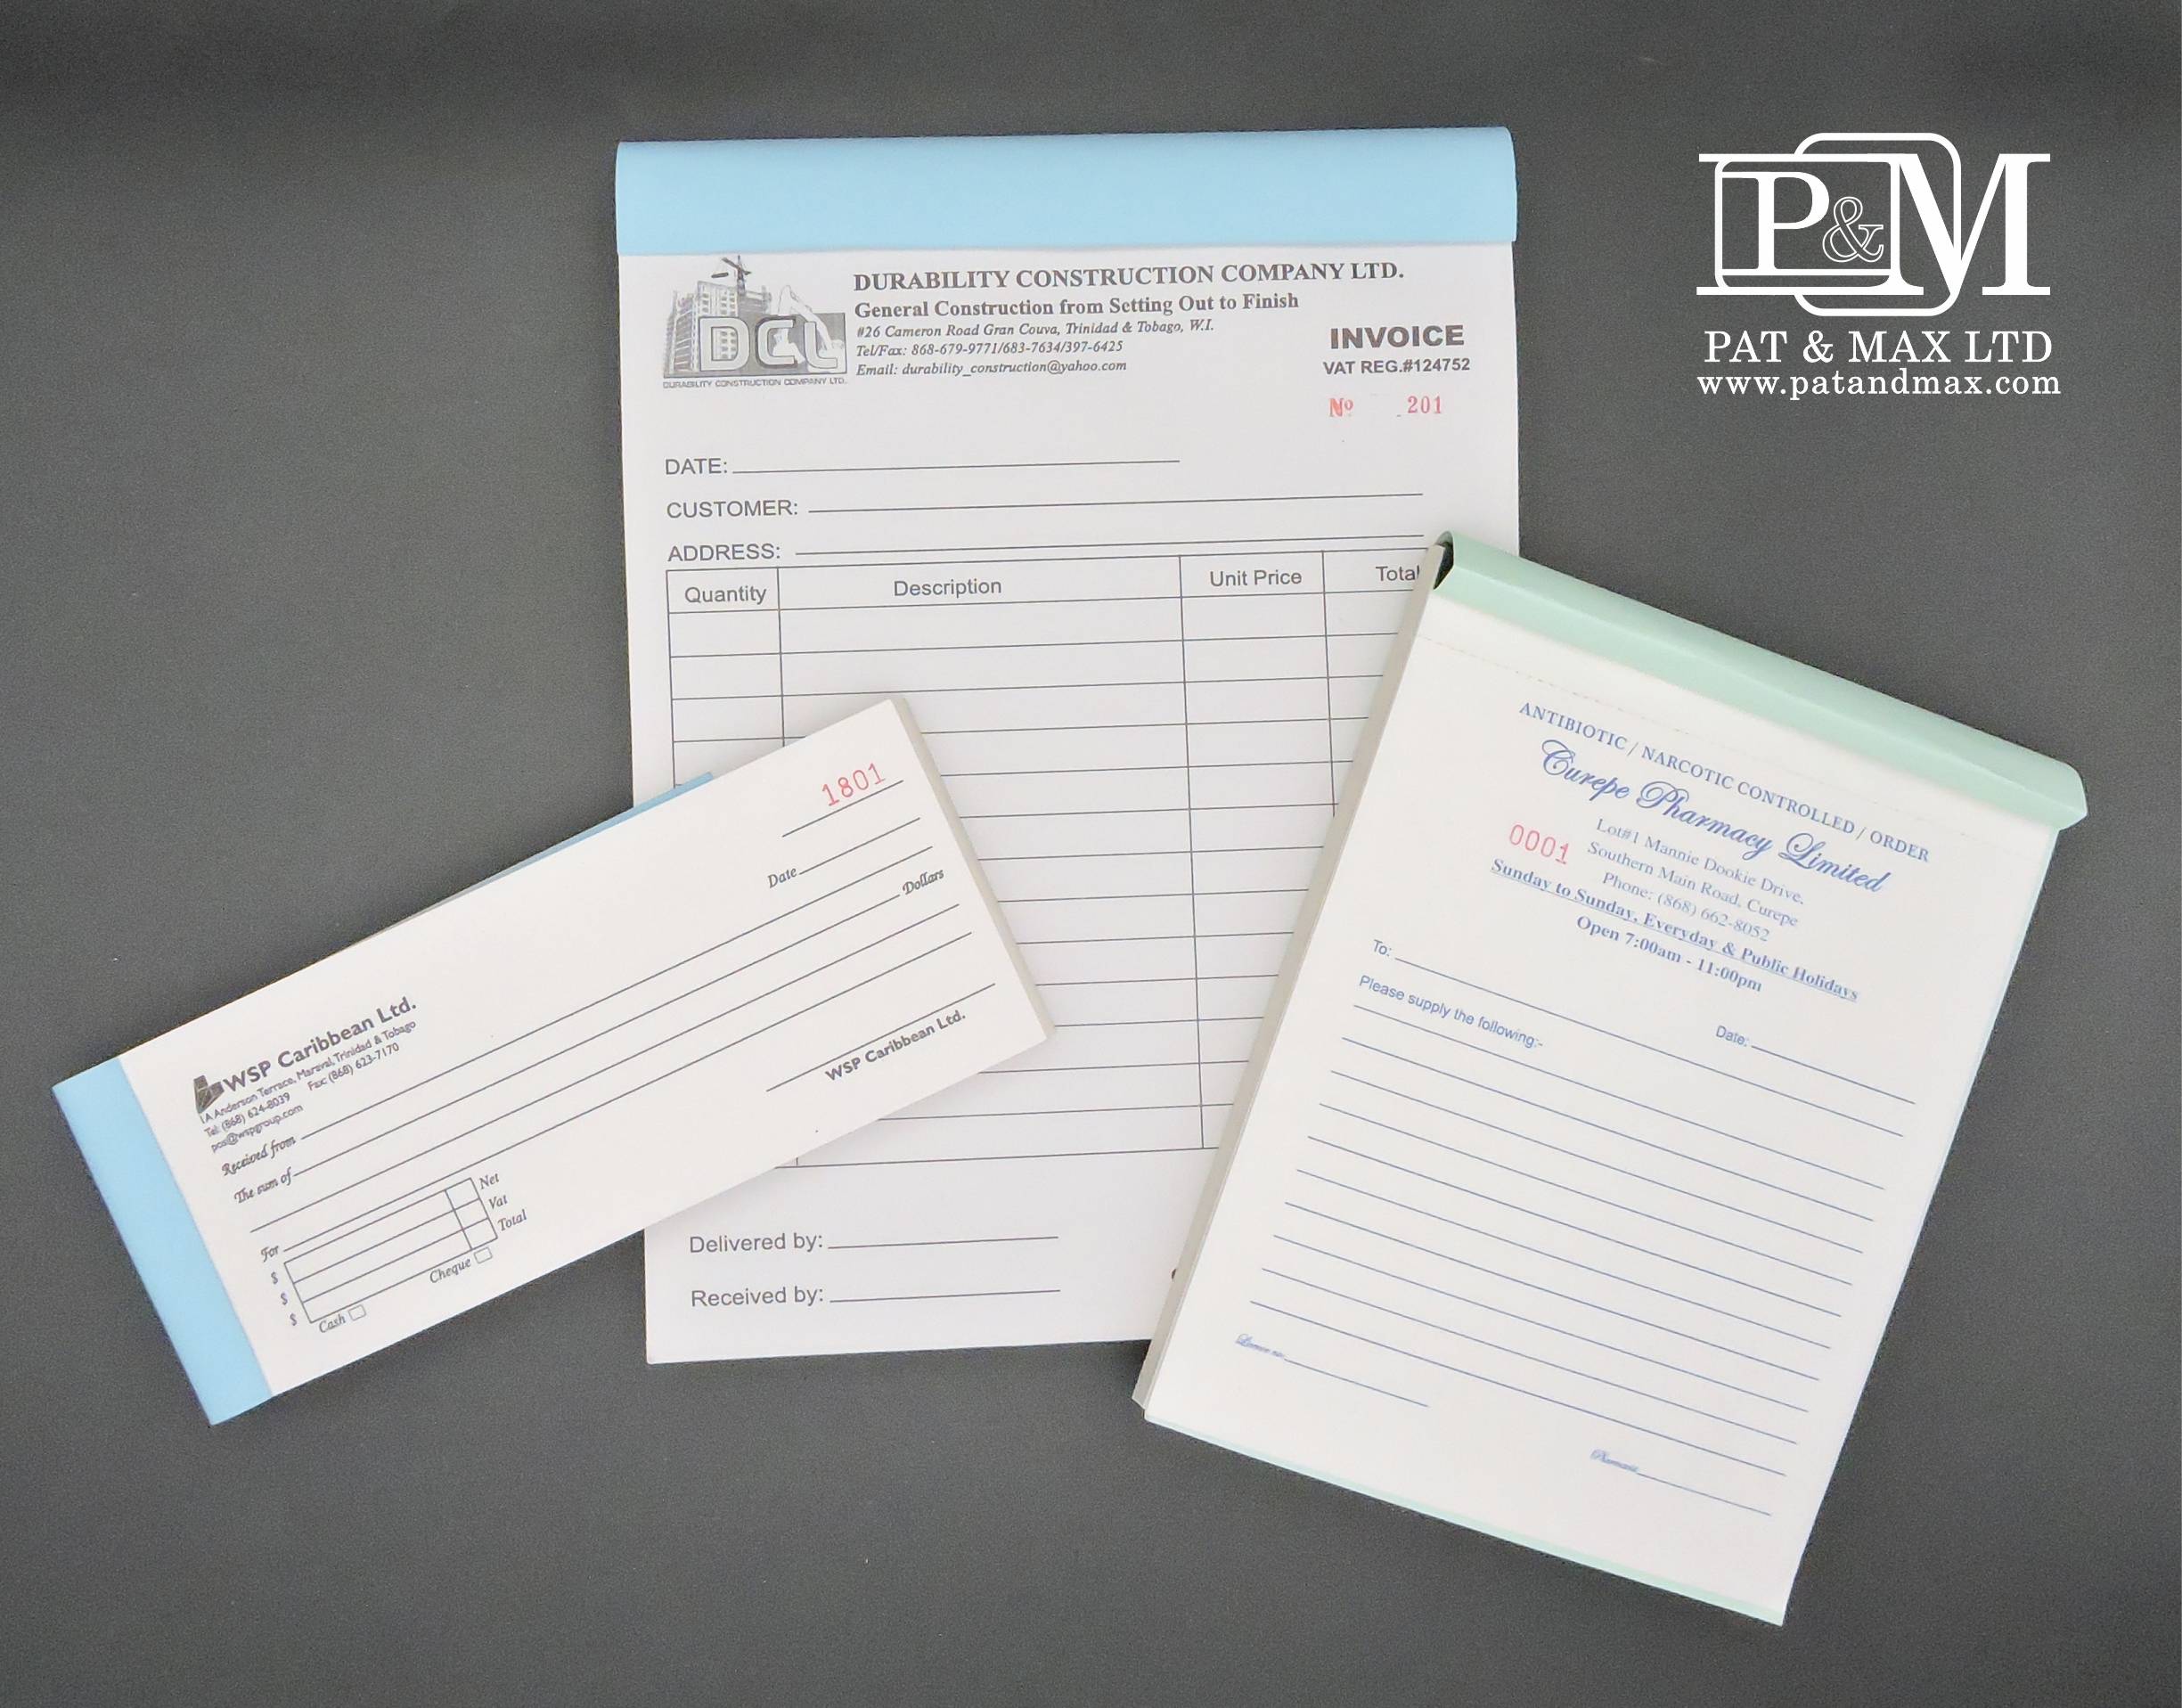 Pat & Max Ltd Plastic & ID Card Systems - OFFICE SUPPLIES